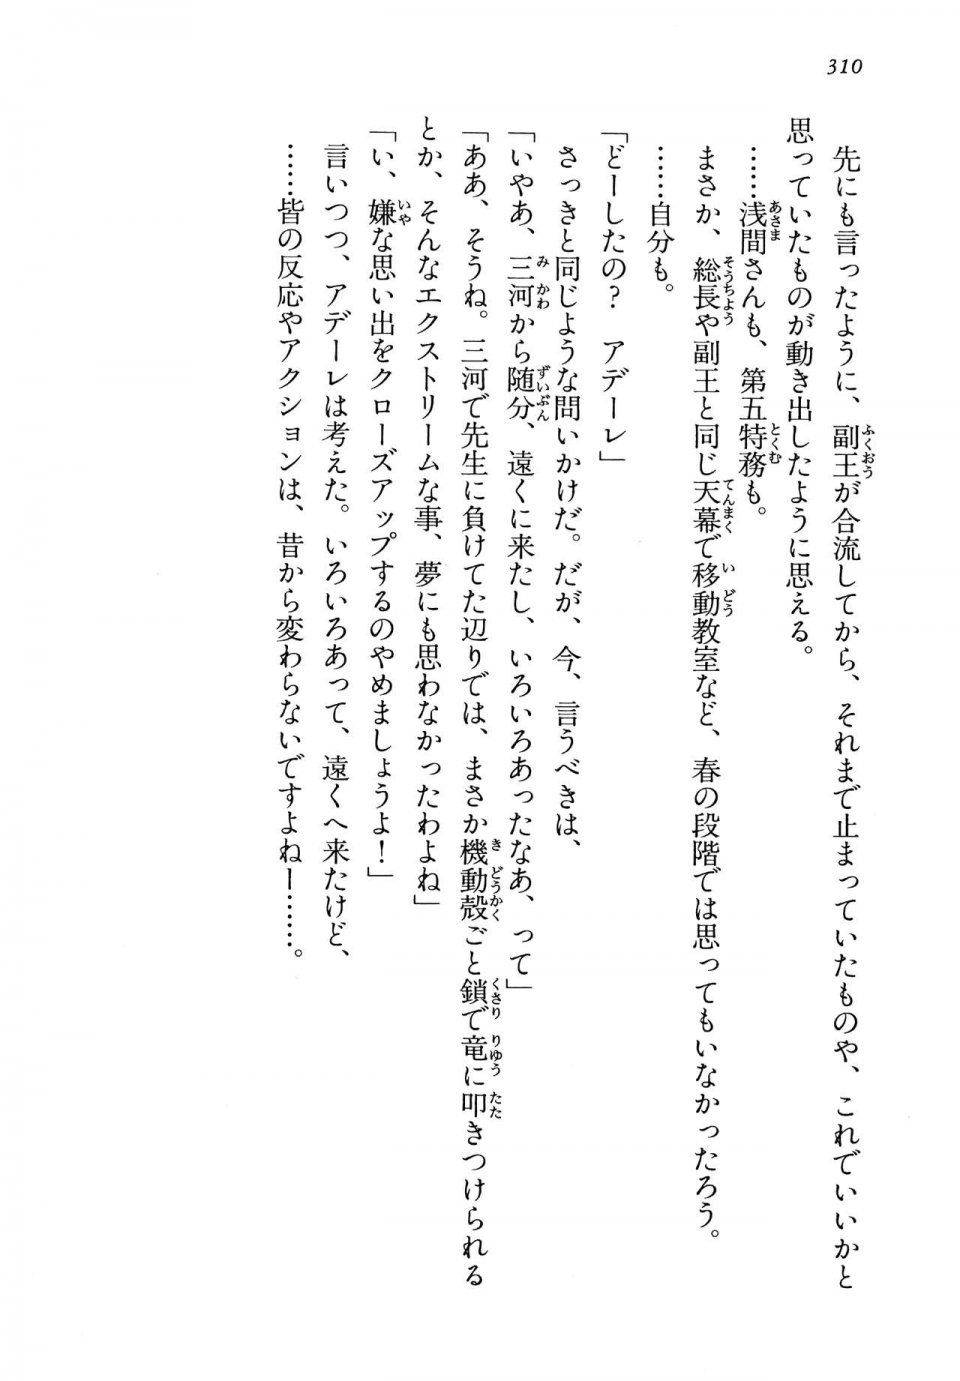 Kyoukai Senjou no Horizon LN Vol 13(6A) - Photo #310